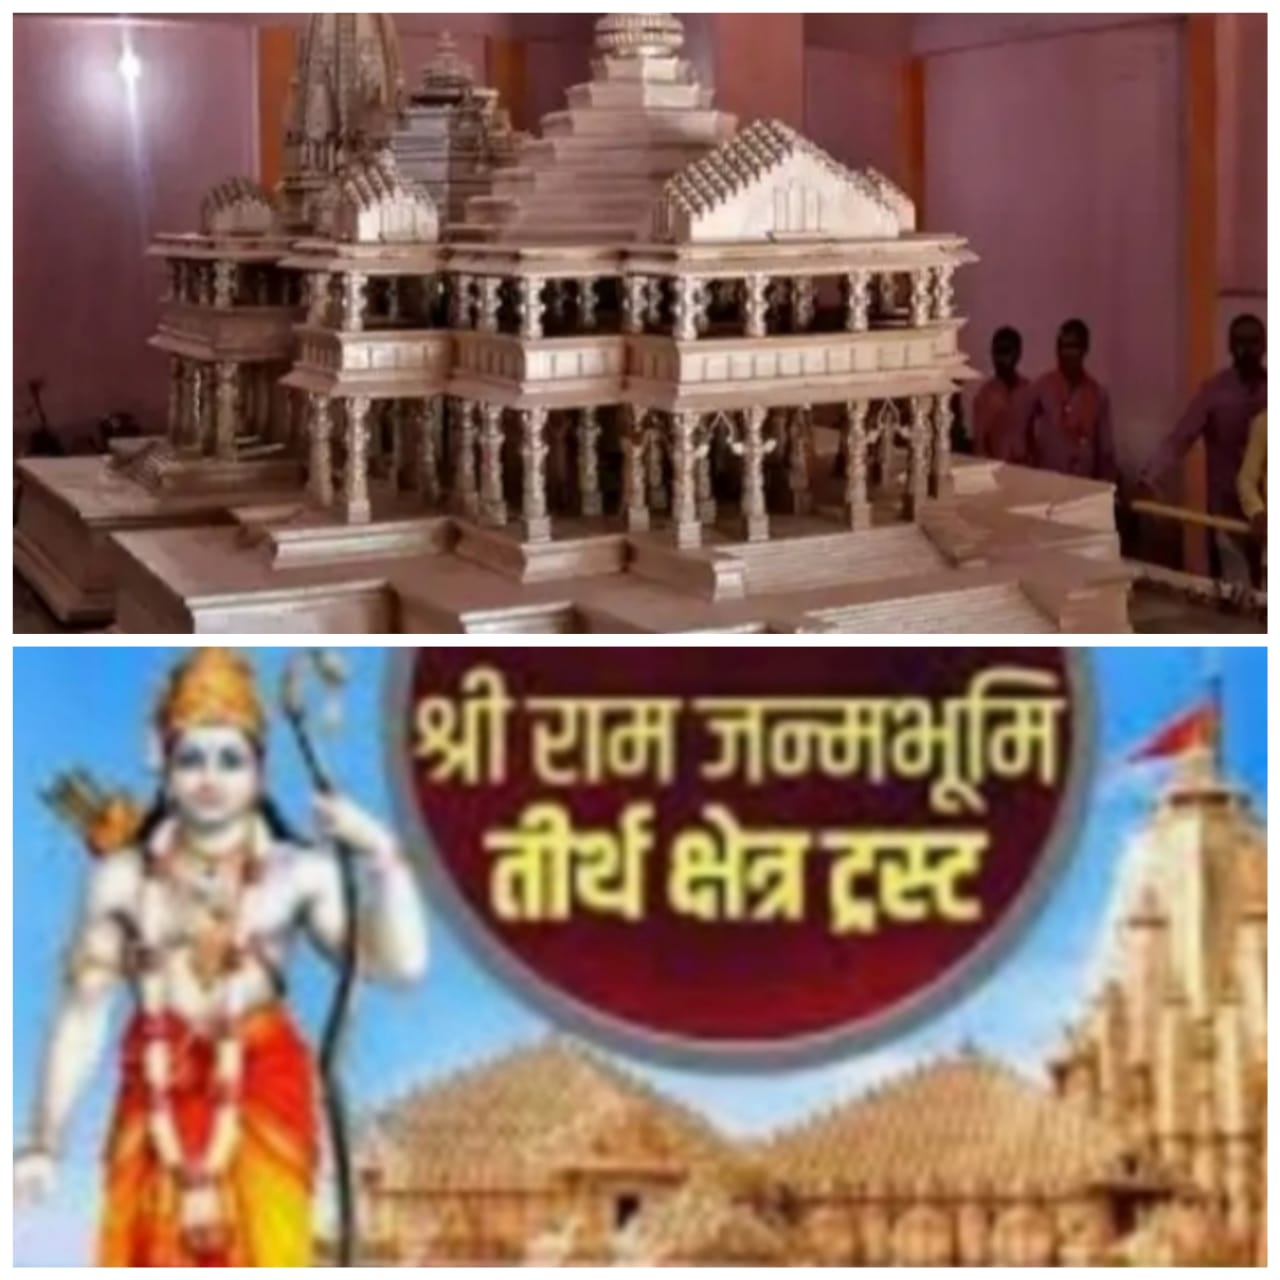 राम मंदिर ट्रस्ट की पहली बैठक 19 फरवरी को,महावीर मंदिर न्यास बोर्ड,पटना देगा 10 करोड़ रुपये,अरविन्द तिवारी की रिपोर्ट-नई दिल्ली-